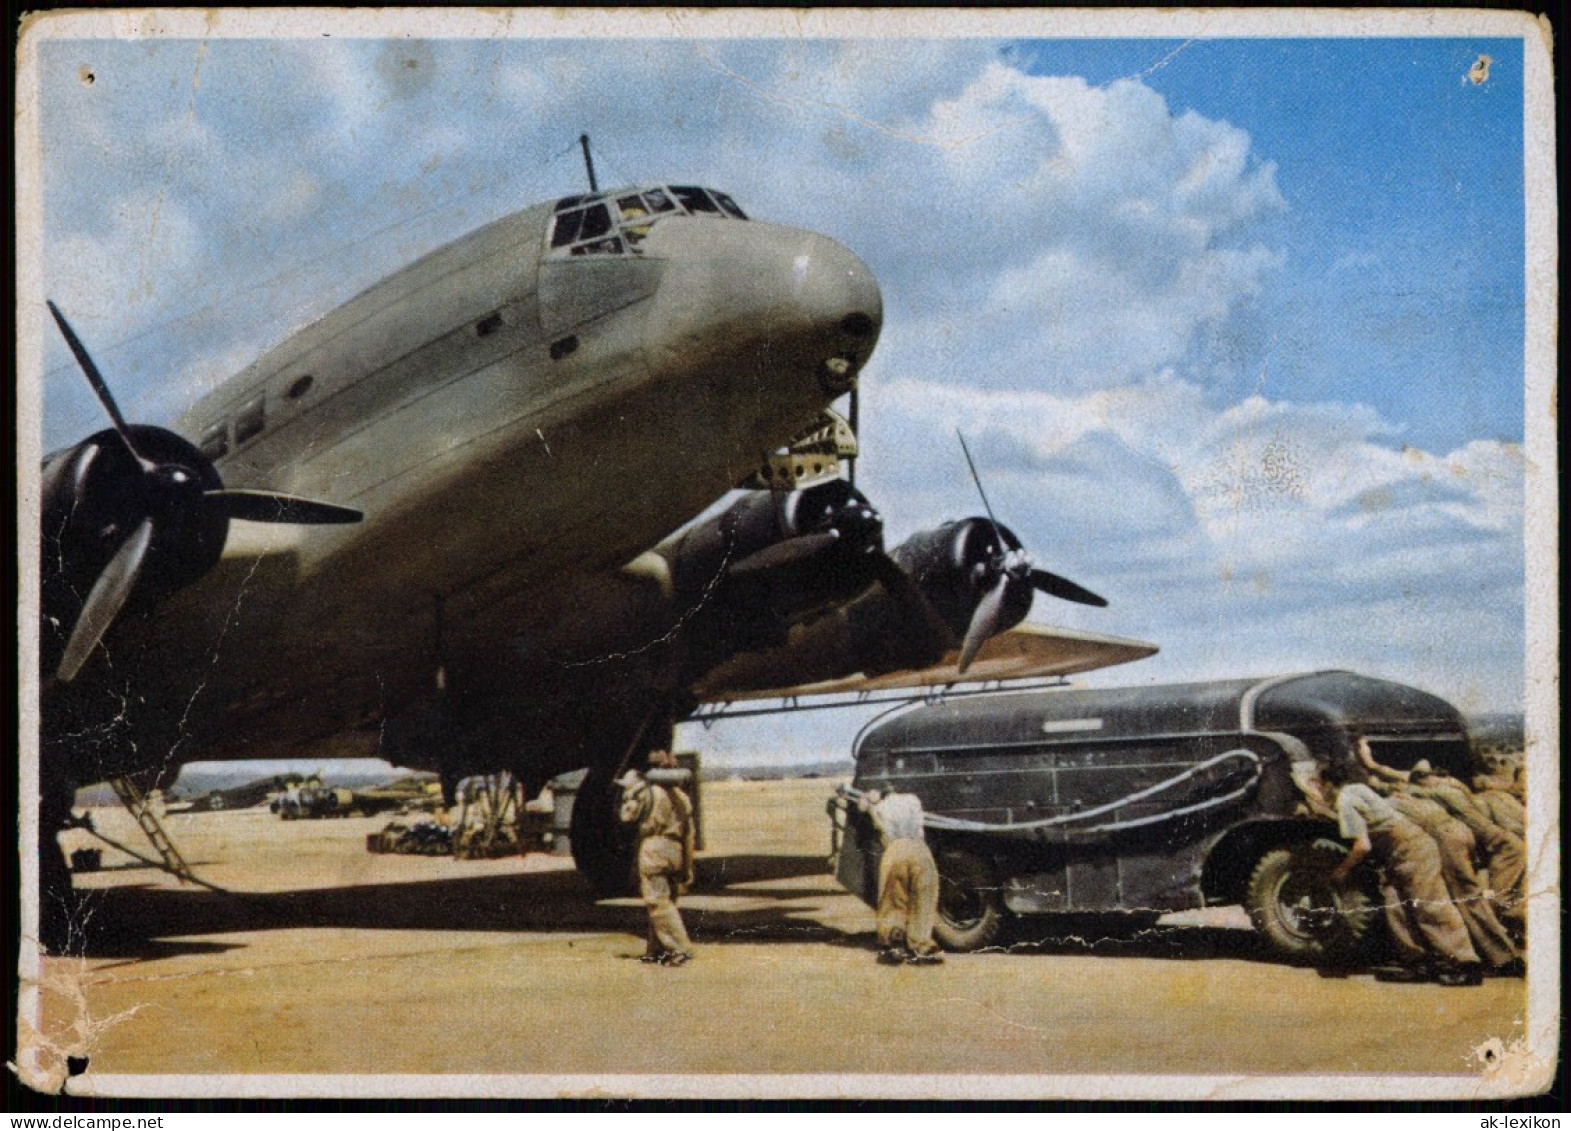 JUNKERS STUKAS UND LUFTTRANSPORTER Flugzeug Airplane Avion Betanken 1940 - 1939-1945: 2nd War